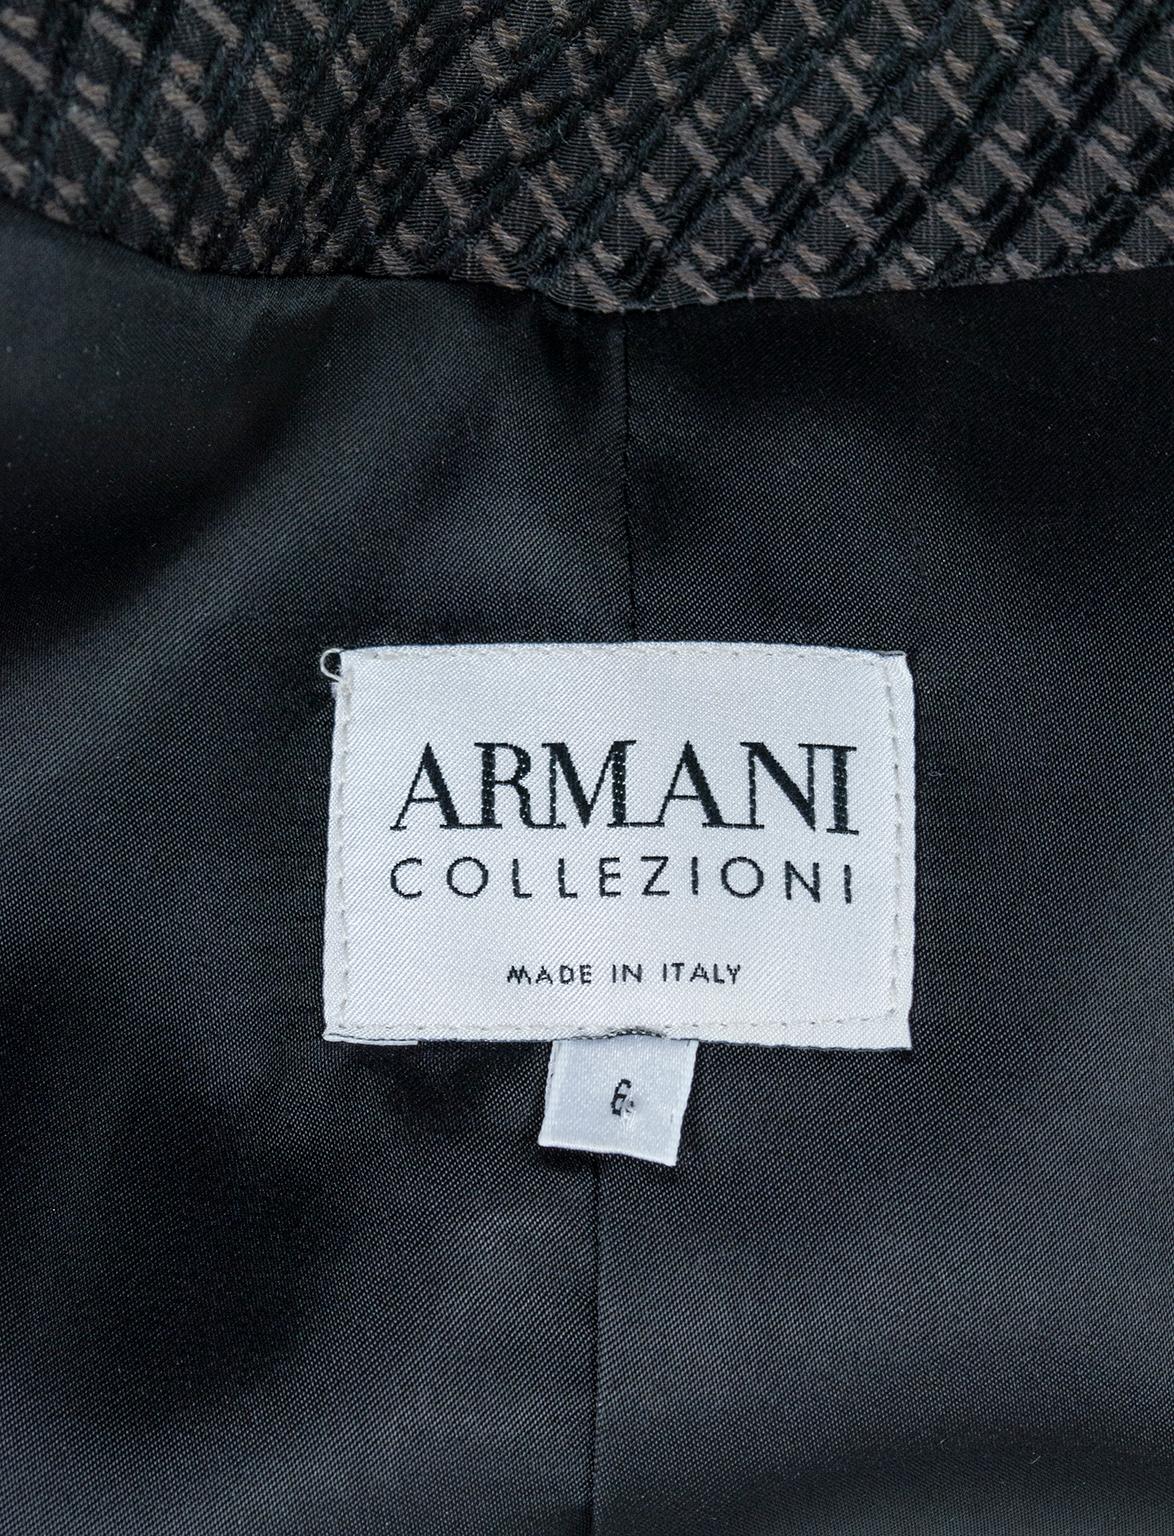 Giorgio Armani Brown Trompe l’Oeil Surrealist Peplum Jacket - US 6, 2003 6